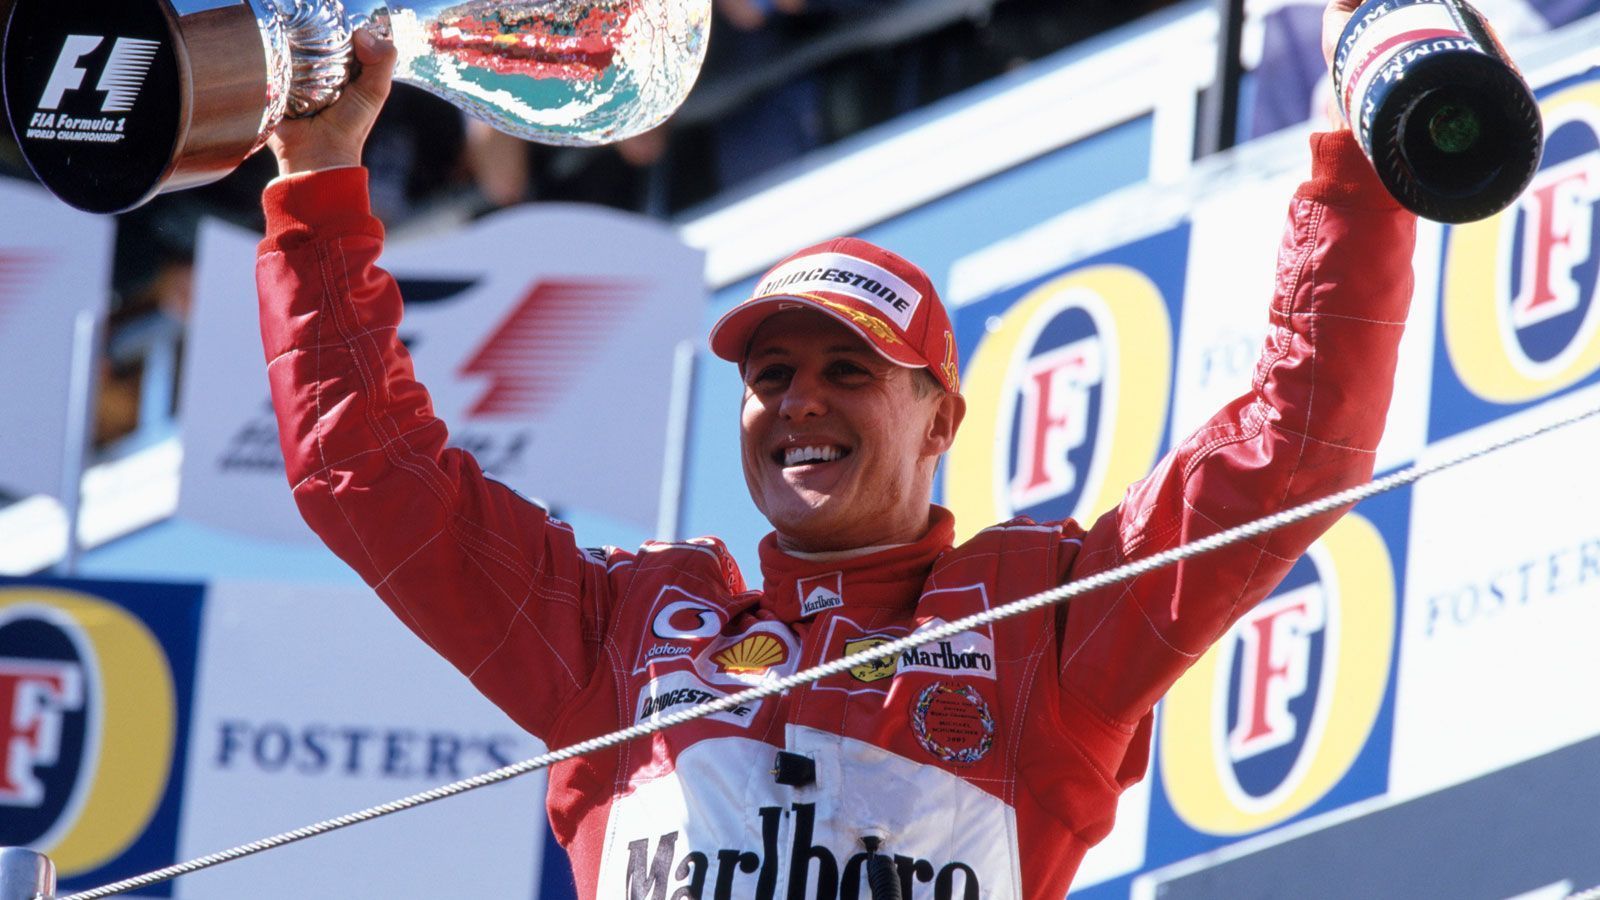 
                <strong>"Schumi" einsame Spitze</strong><br>
                Die meisten Siege in Imola gehen auf das Konto von Michael Schumacher. Der Kerpener gewann sieben Rennen auf der Strecke, so auch im Jahr 2006, als die Formel 1 zuletzt dort gastierte. Von 1999 bis 2004 triumphierte sogar jedes Jahr ein Schumacher auf der Strecke, Bruder Ralf konnte 2001 seinen ersten Formel-1-Sieg in Imola bejubeln. Auch Heinz-Harald Frentzen feierte im "Autodromo Internazionale Enzo e Dino Ferrari" 1997 seinen ersten Sieg in der Königklasse, somit gewann keine andere Nation öfter ein Formel-1-Rennen in Imola.
              